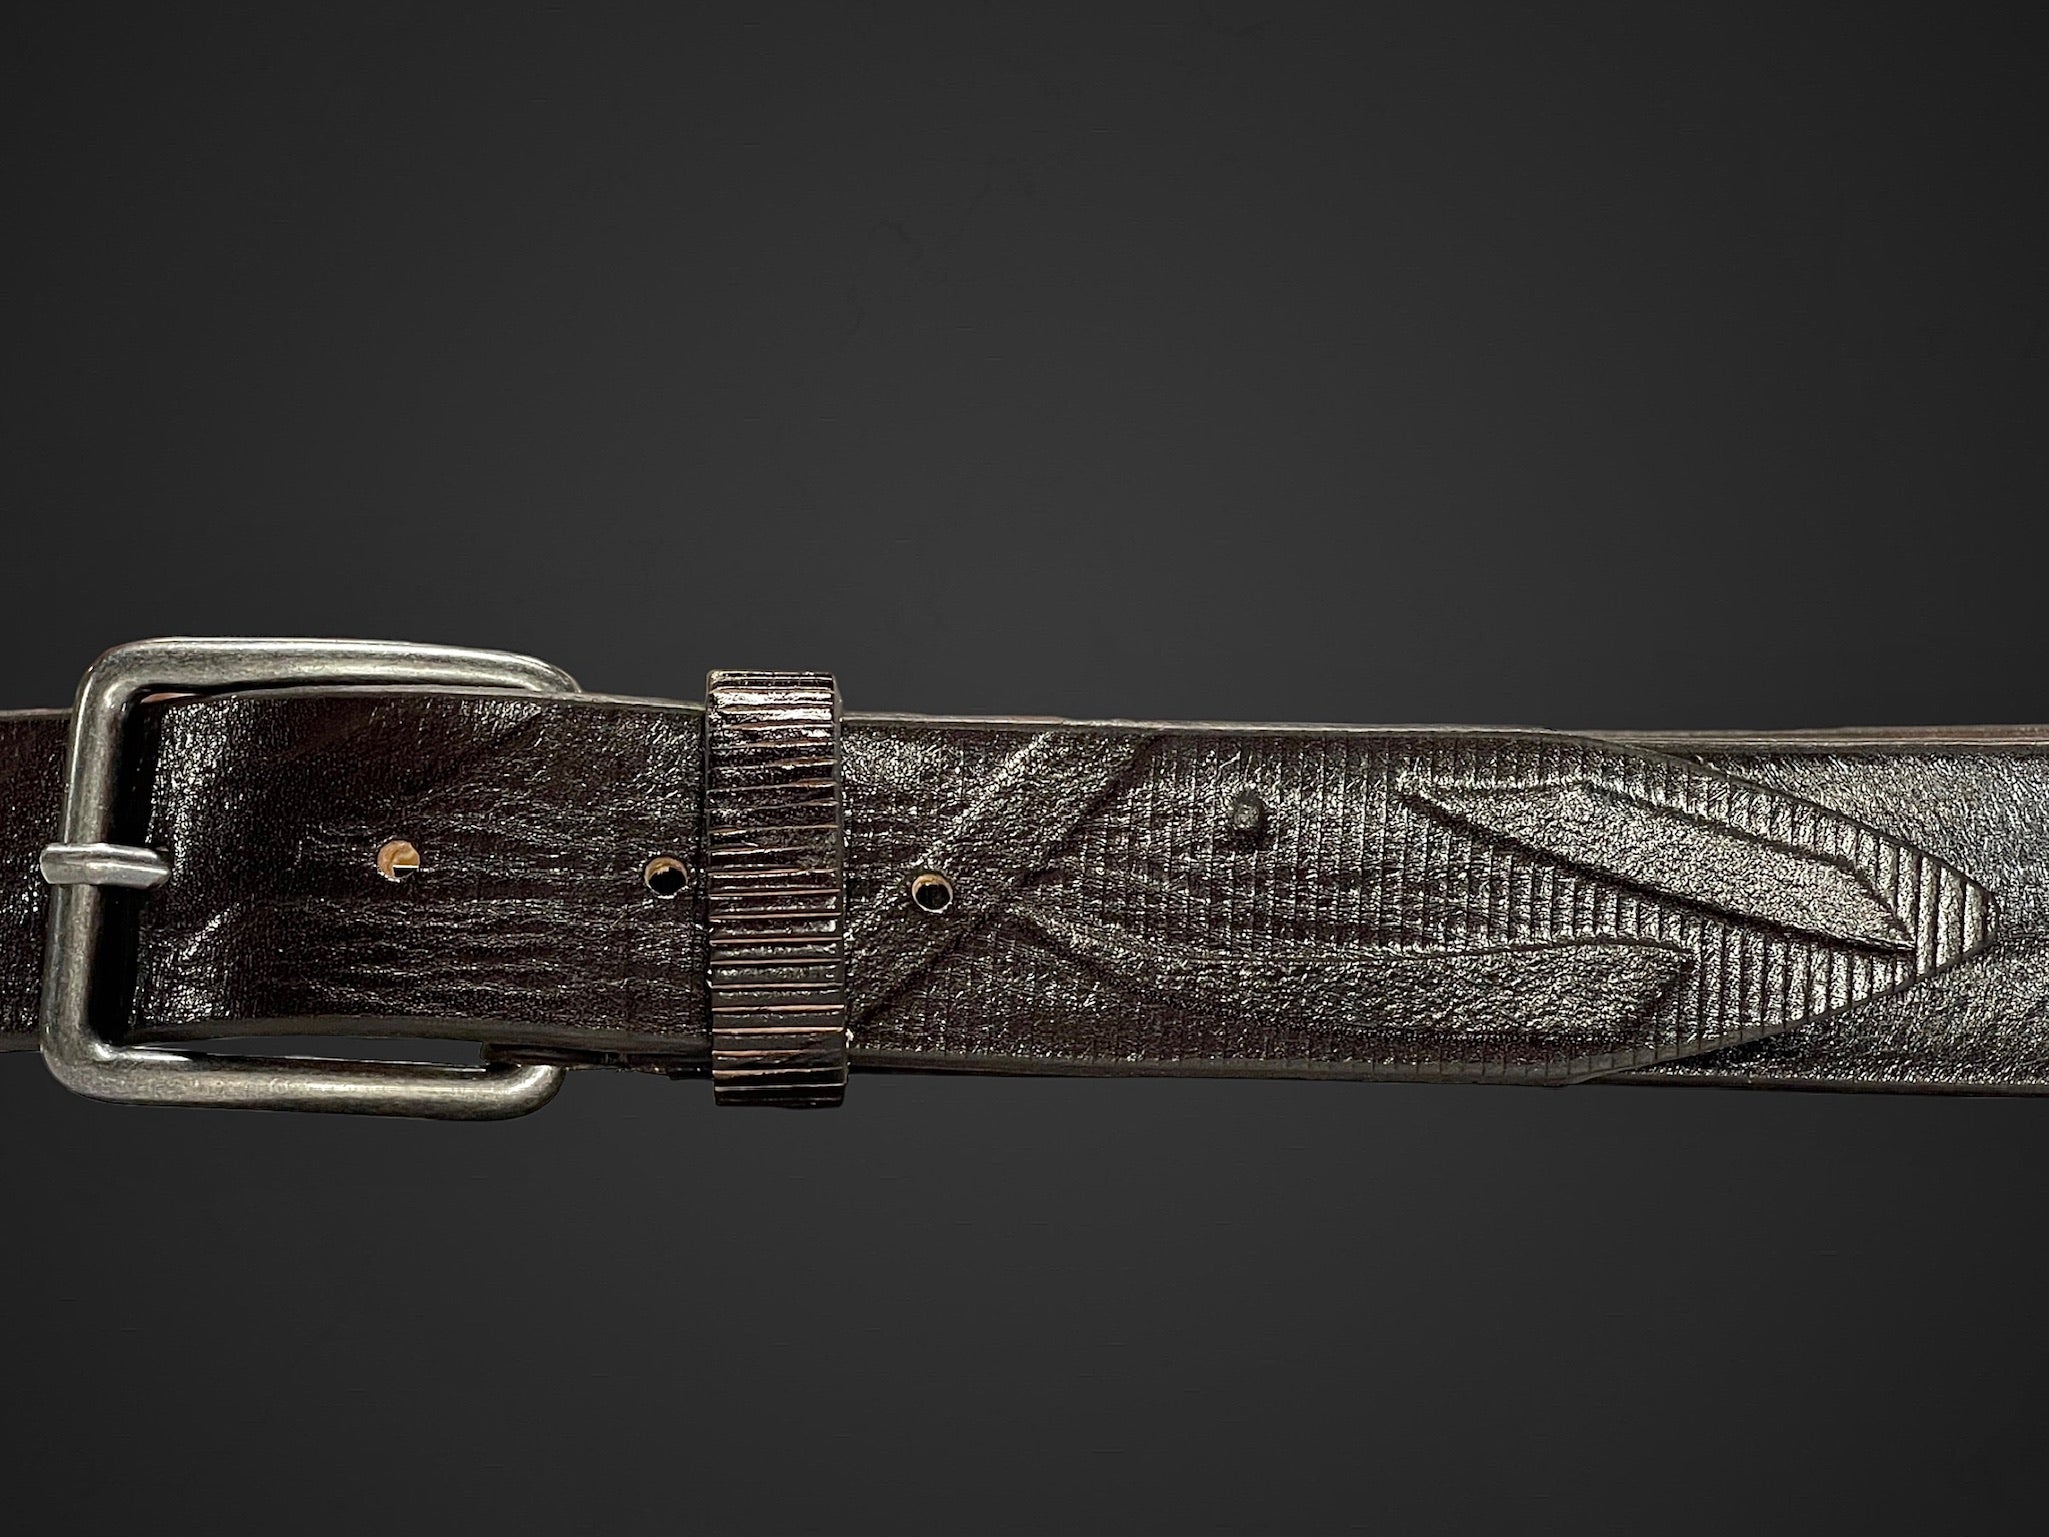 Cintura 035mm stropicciata a mano con aggiunta di stampo a segni japan